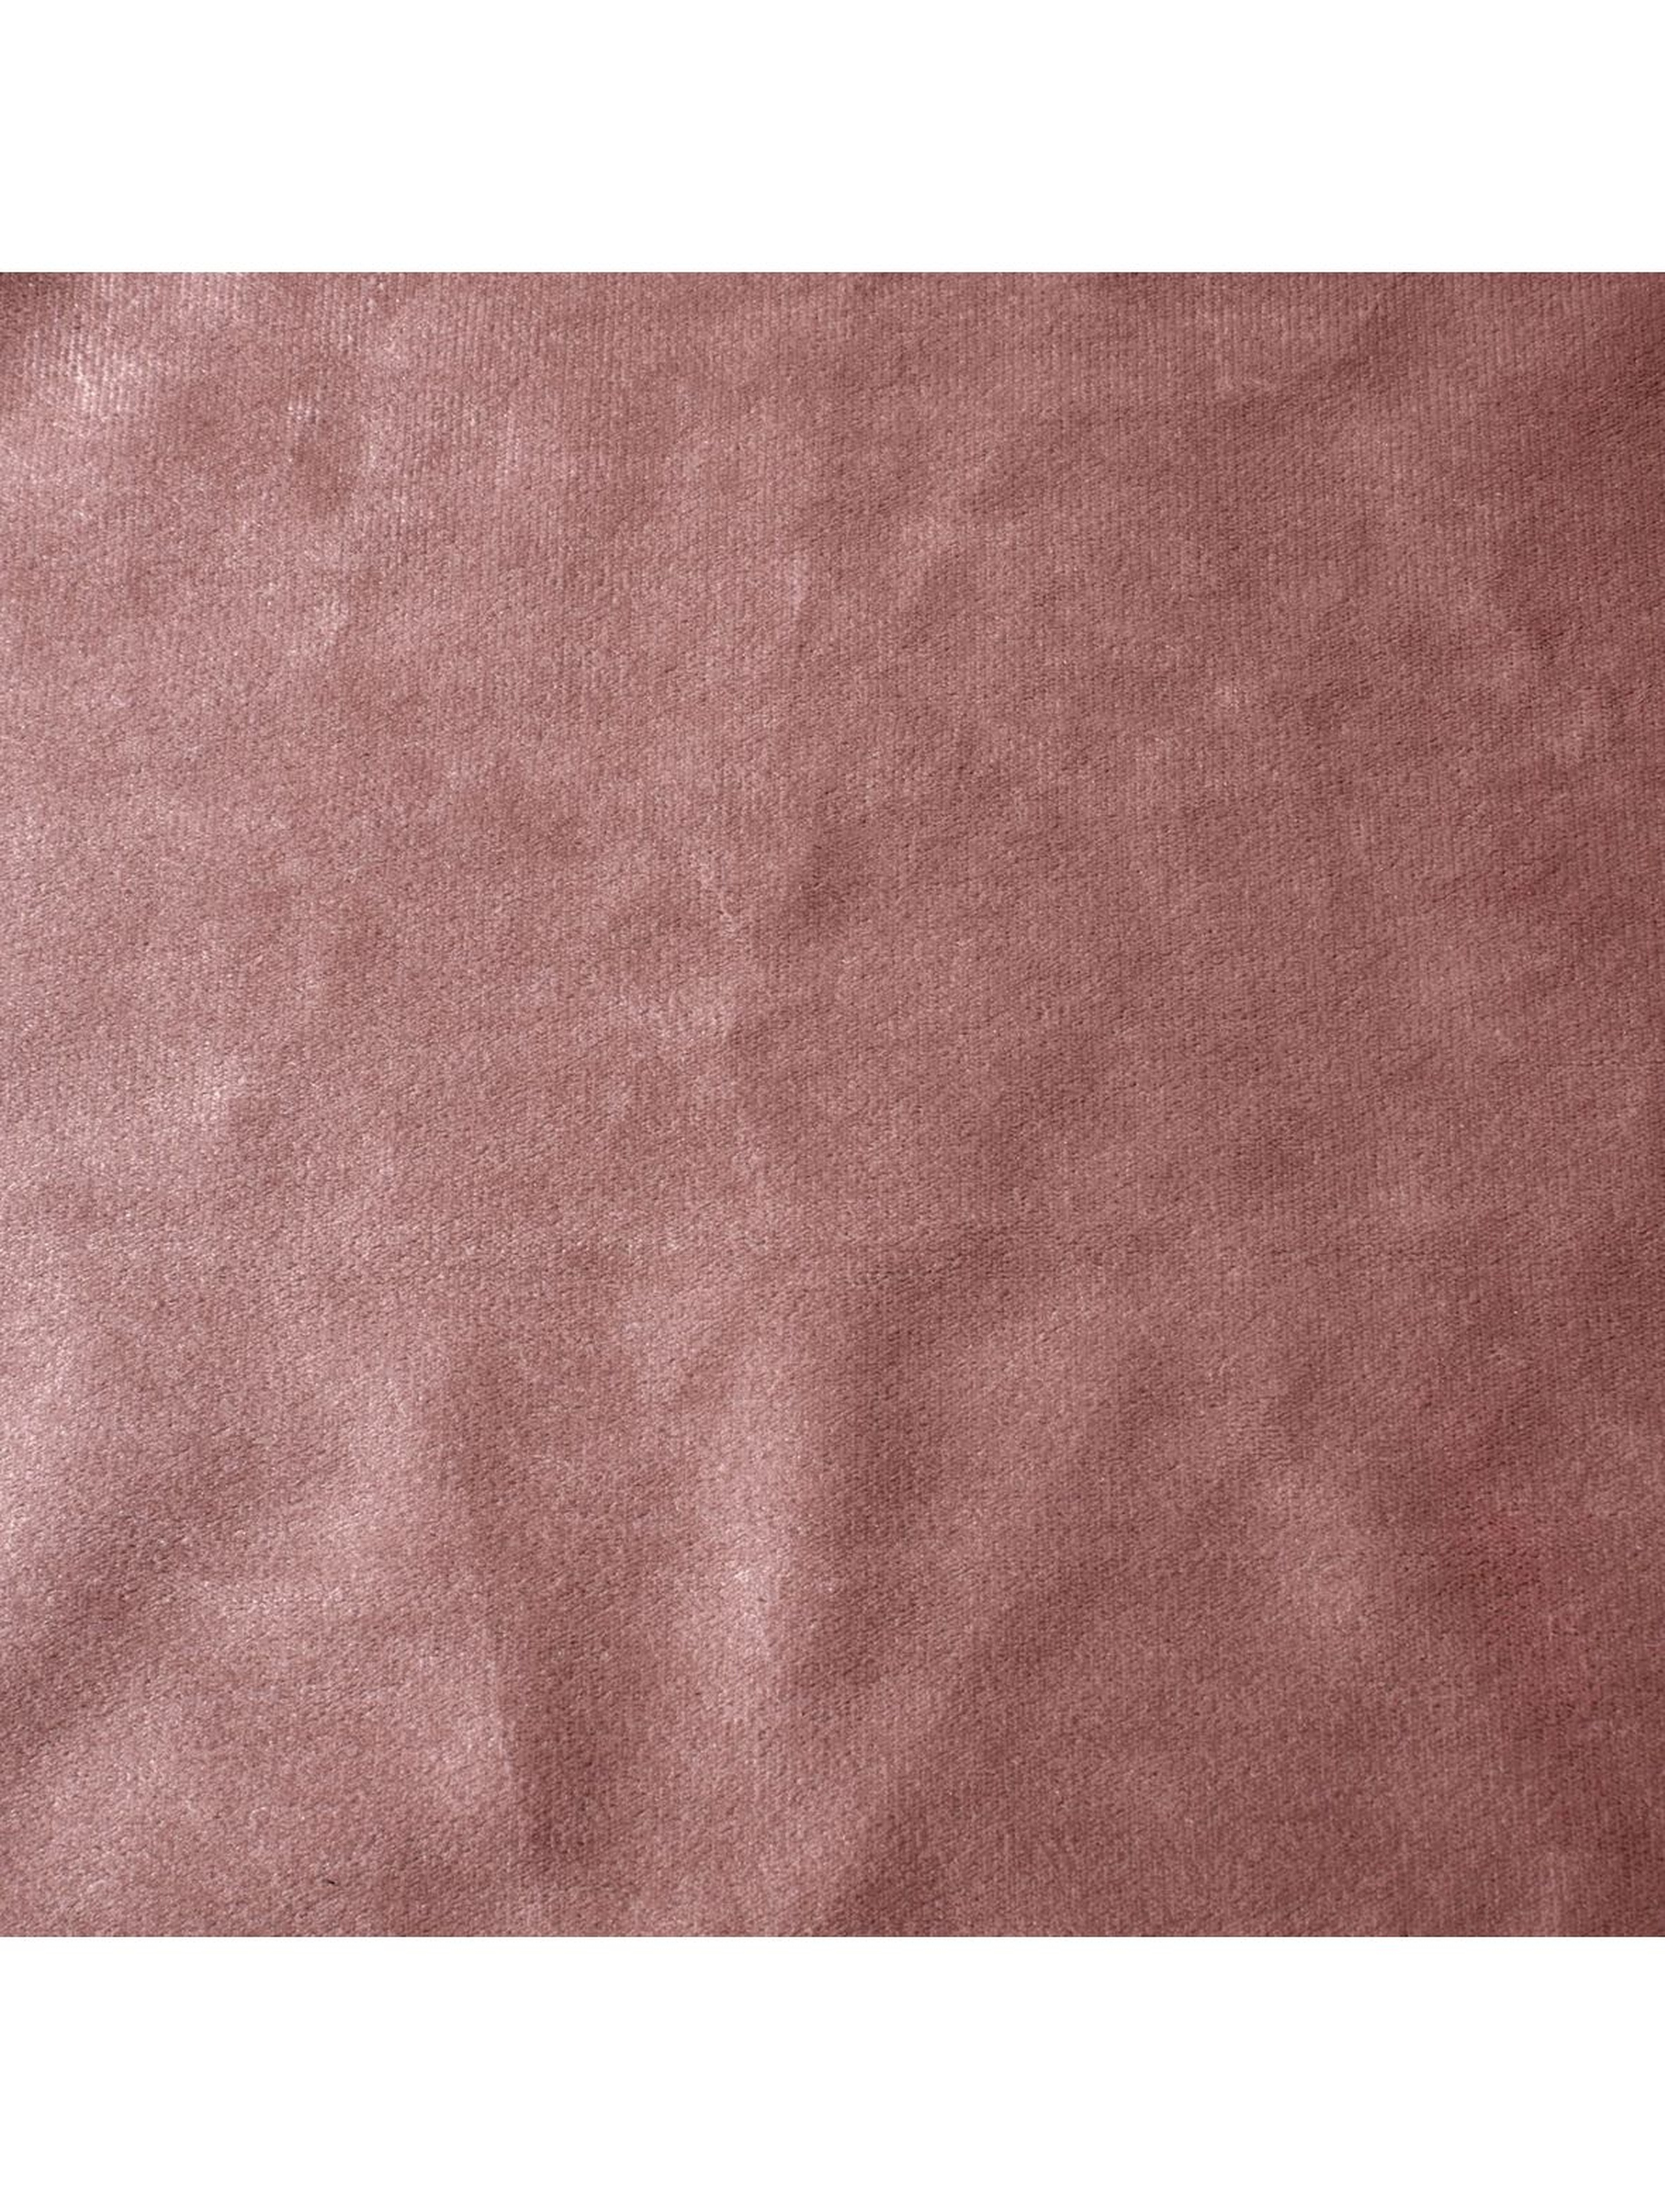 Zasłona jednokolorowa - różowa - 140x270cm